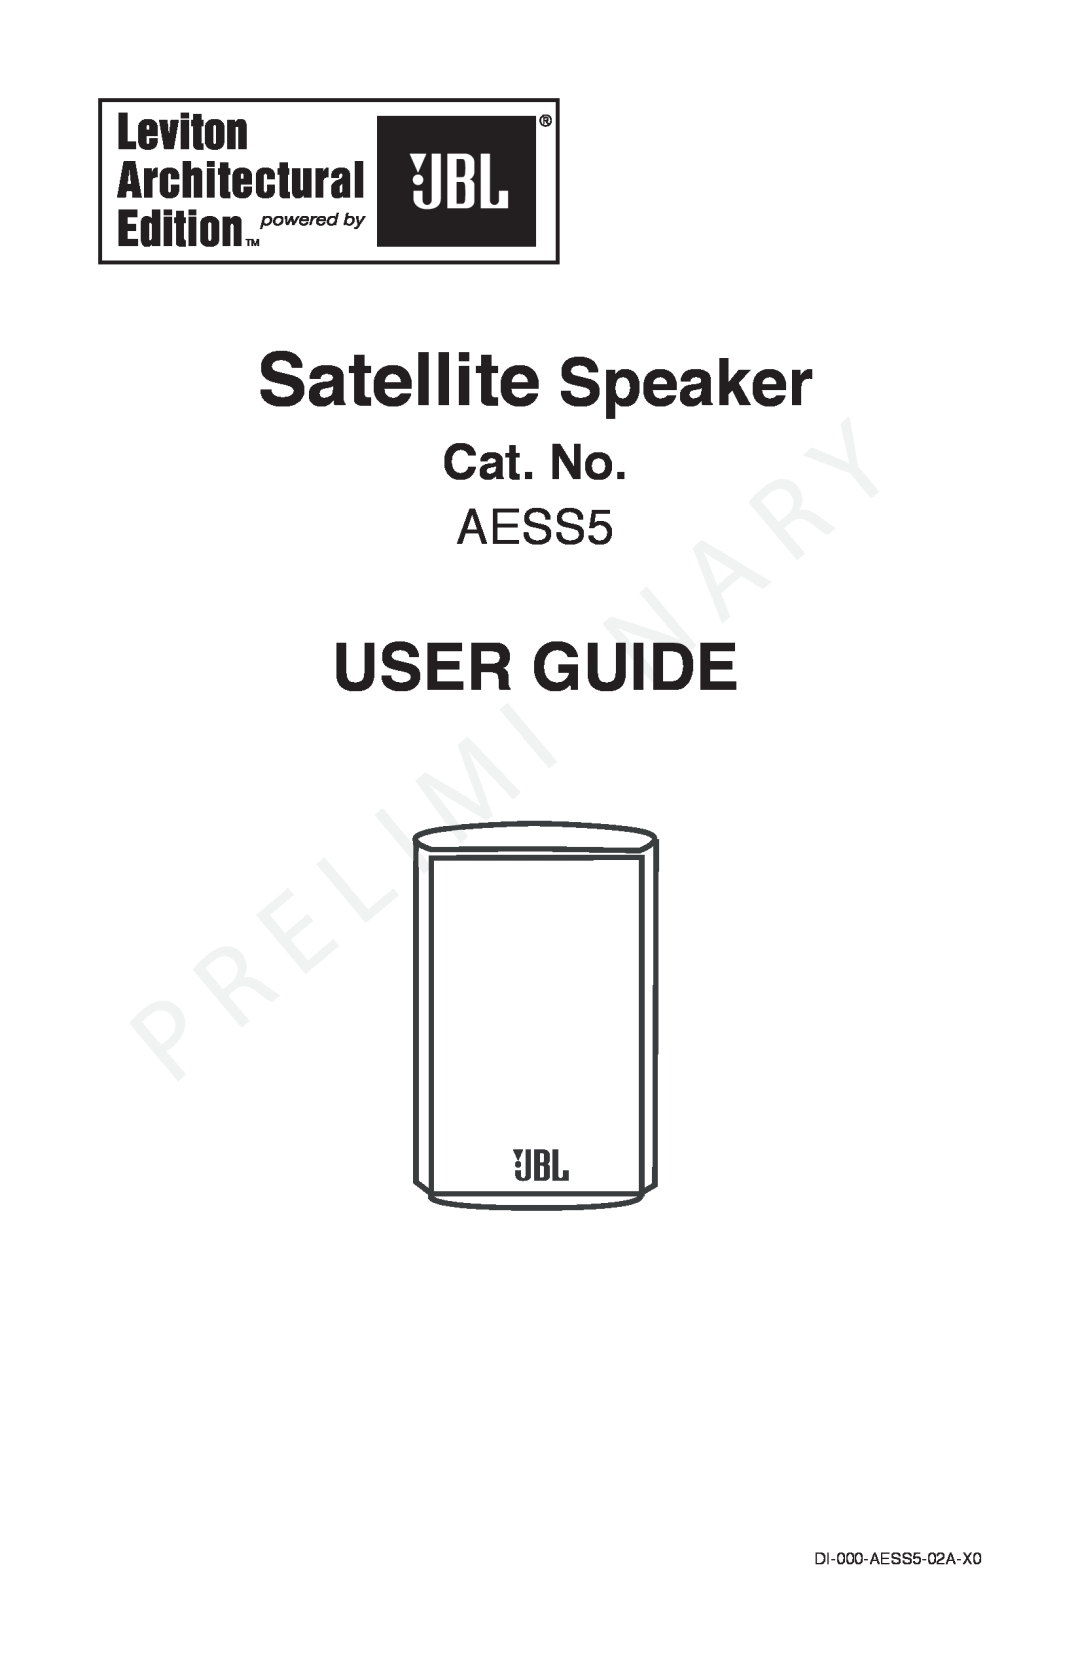 Leviton manual Cat. No, Satellite Speaker, User Guide, DI-000-AESS5-02A-X0 